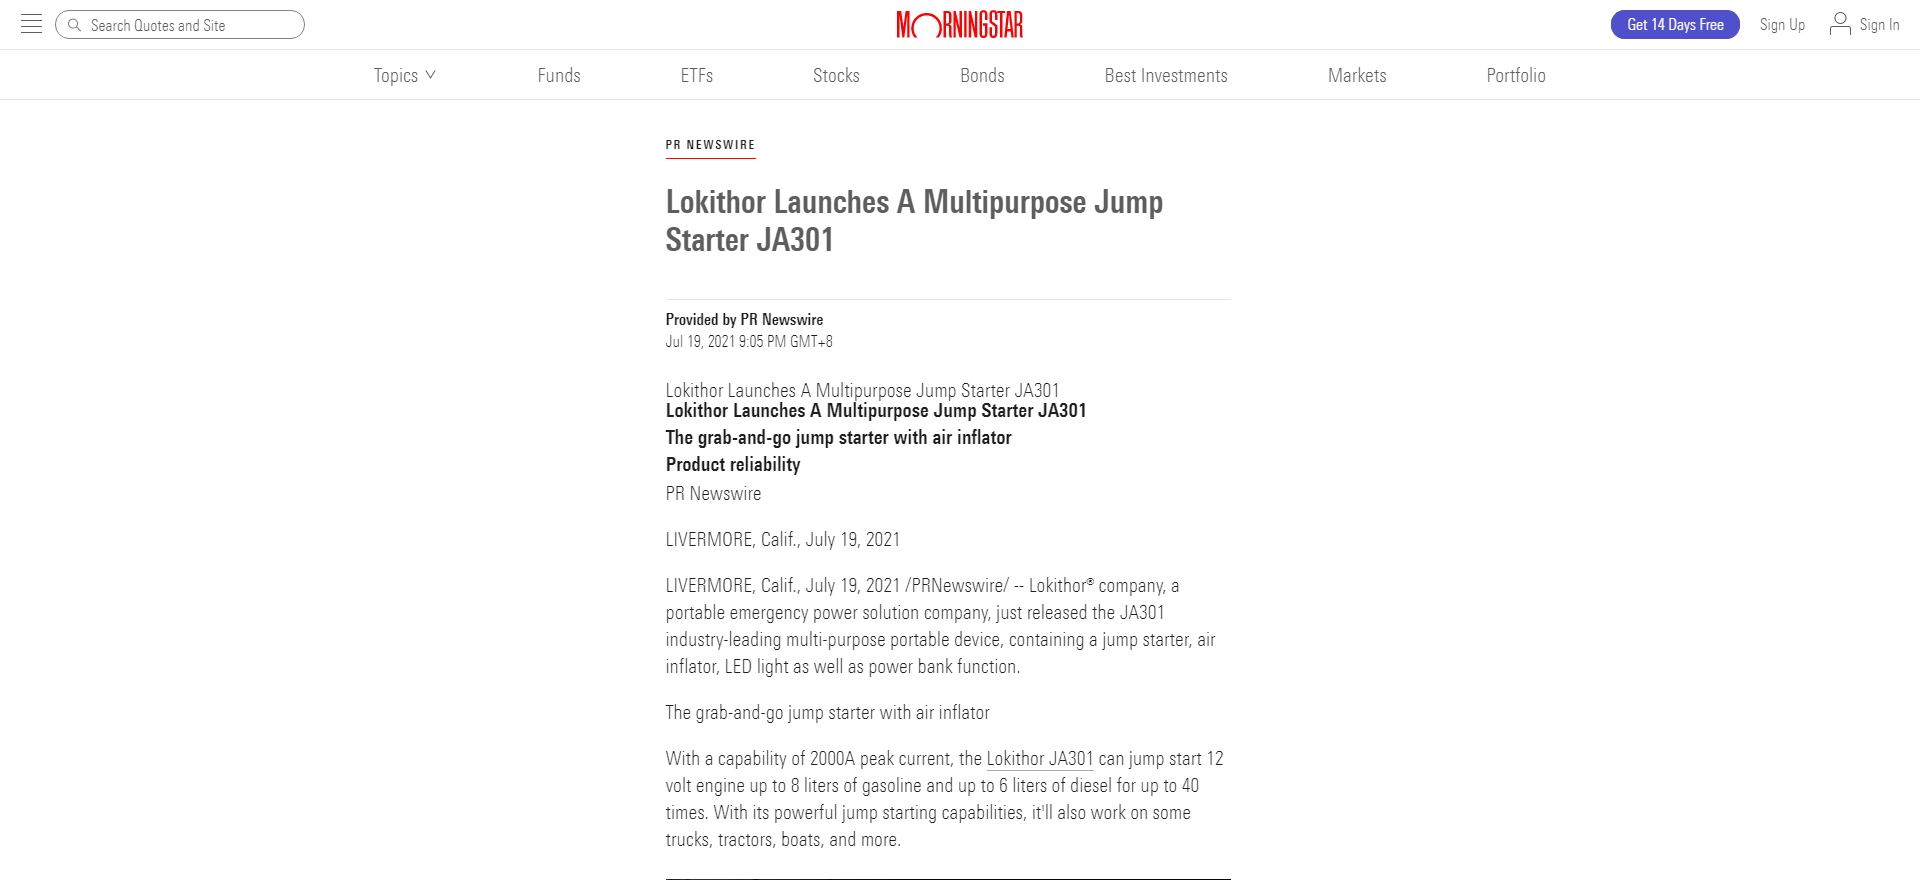 Lokithor Launches A Multipurpose Jump Starter JA301 - Morningstar_ - www.morningstar.com